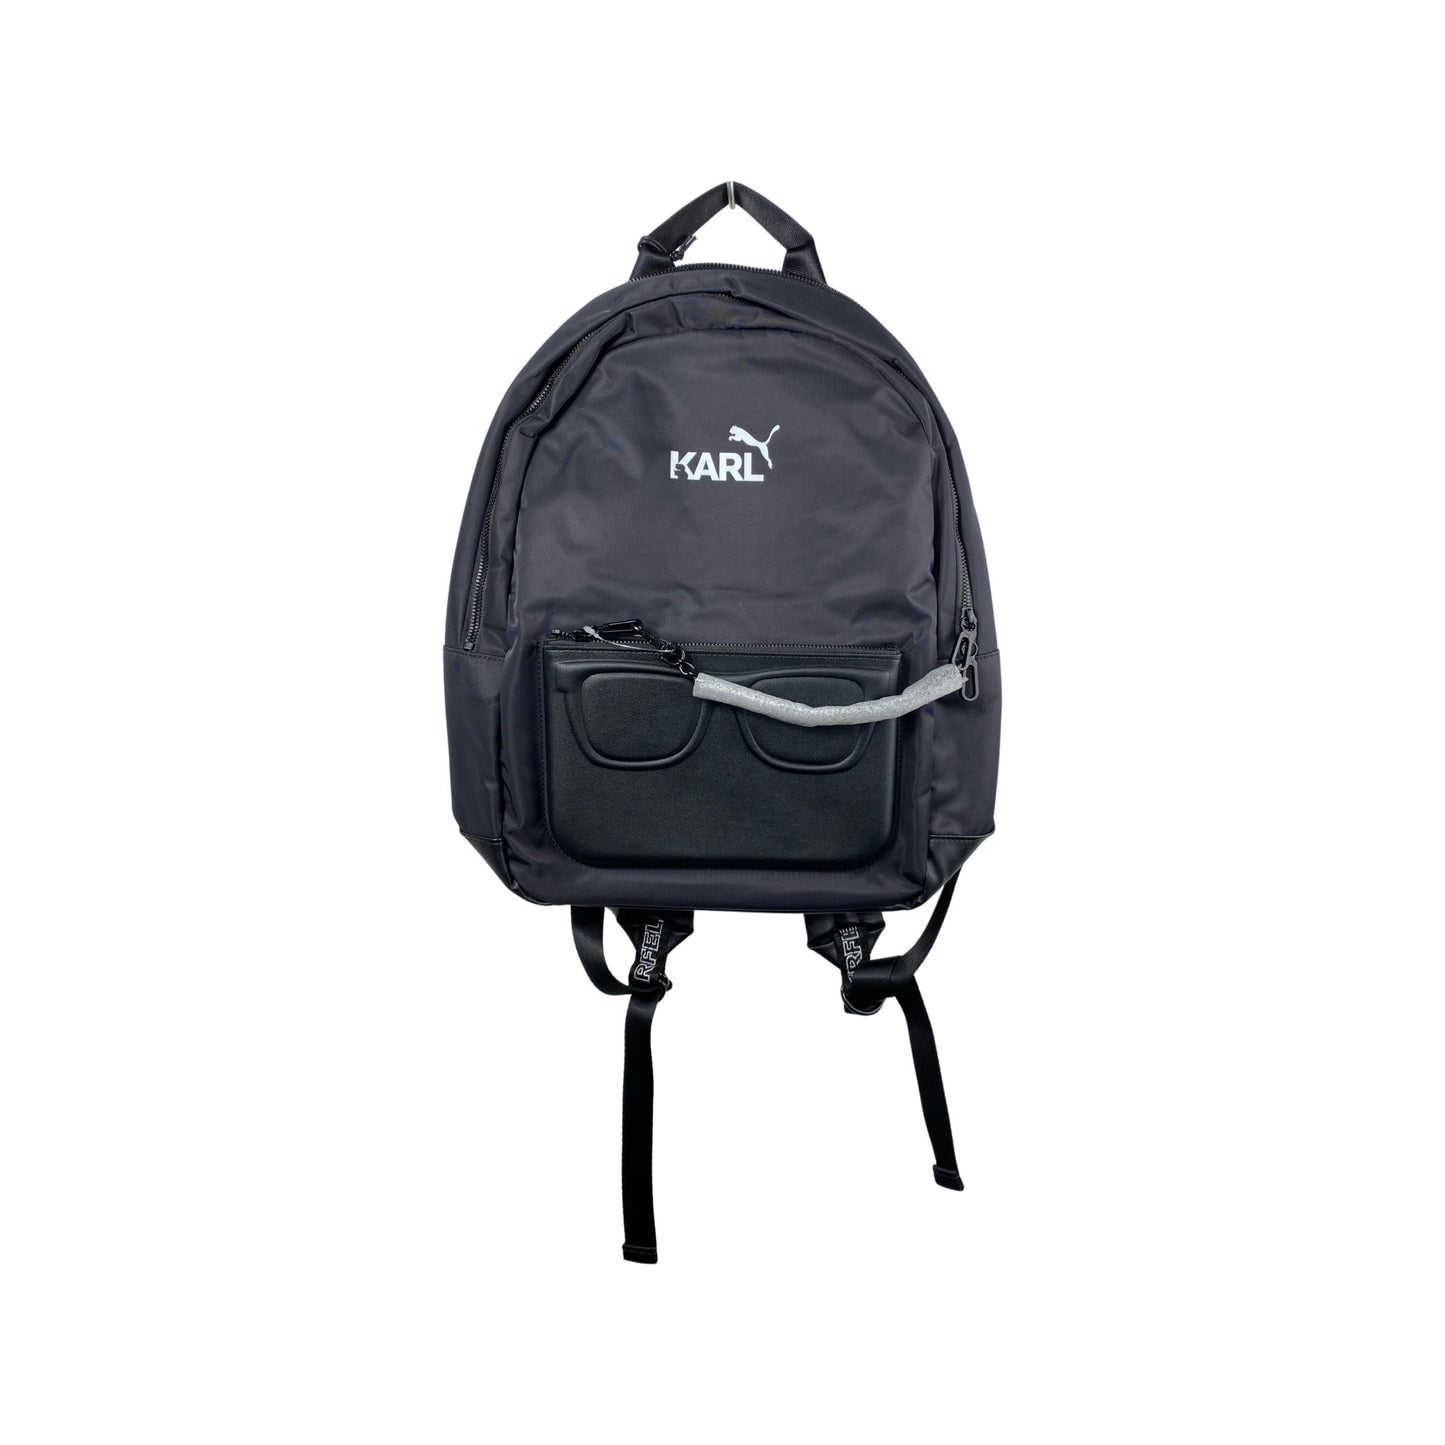 Puma Rucksack “KARL Backpack “- black